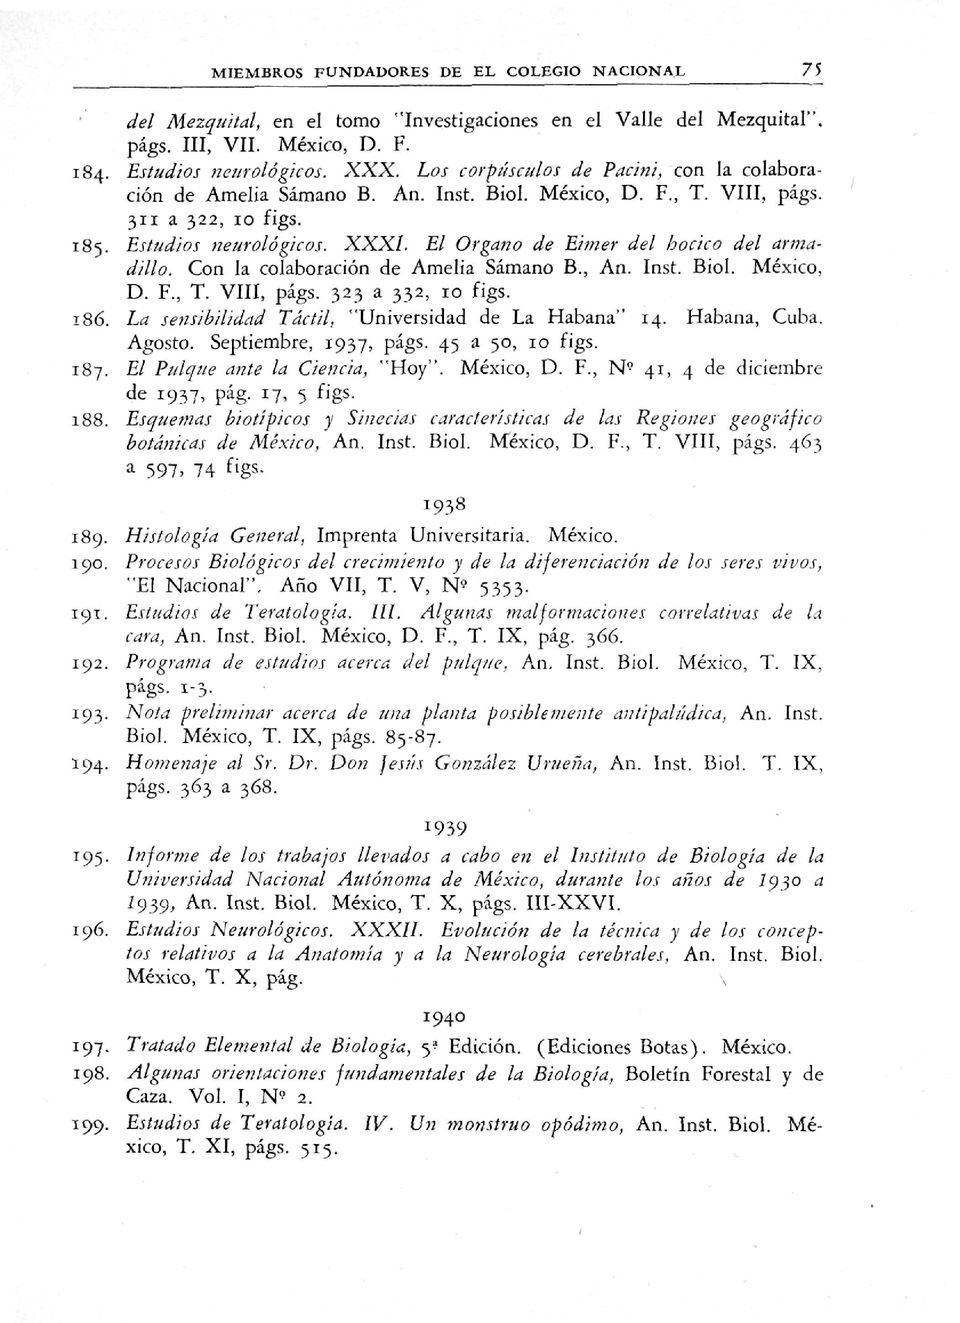 XXXL El Órgano de Eimer del hocico del armadillo. Con la colaboración de Amelia Sámano B., An. Inst. Biol. México, D. F., T. VIII, págs. 323 a 332, 10 figs. '/''r'-' "' ''.-' ' 186.